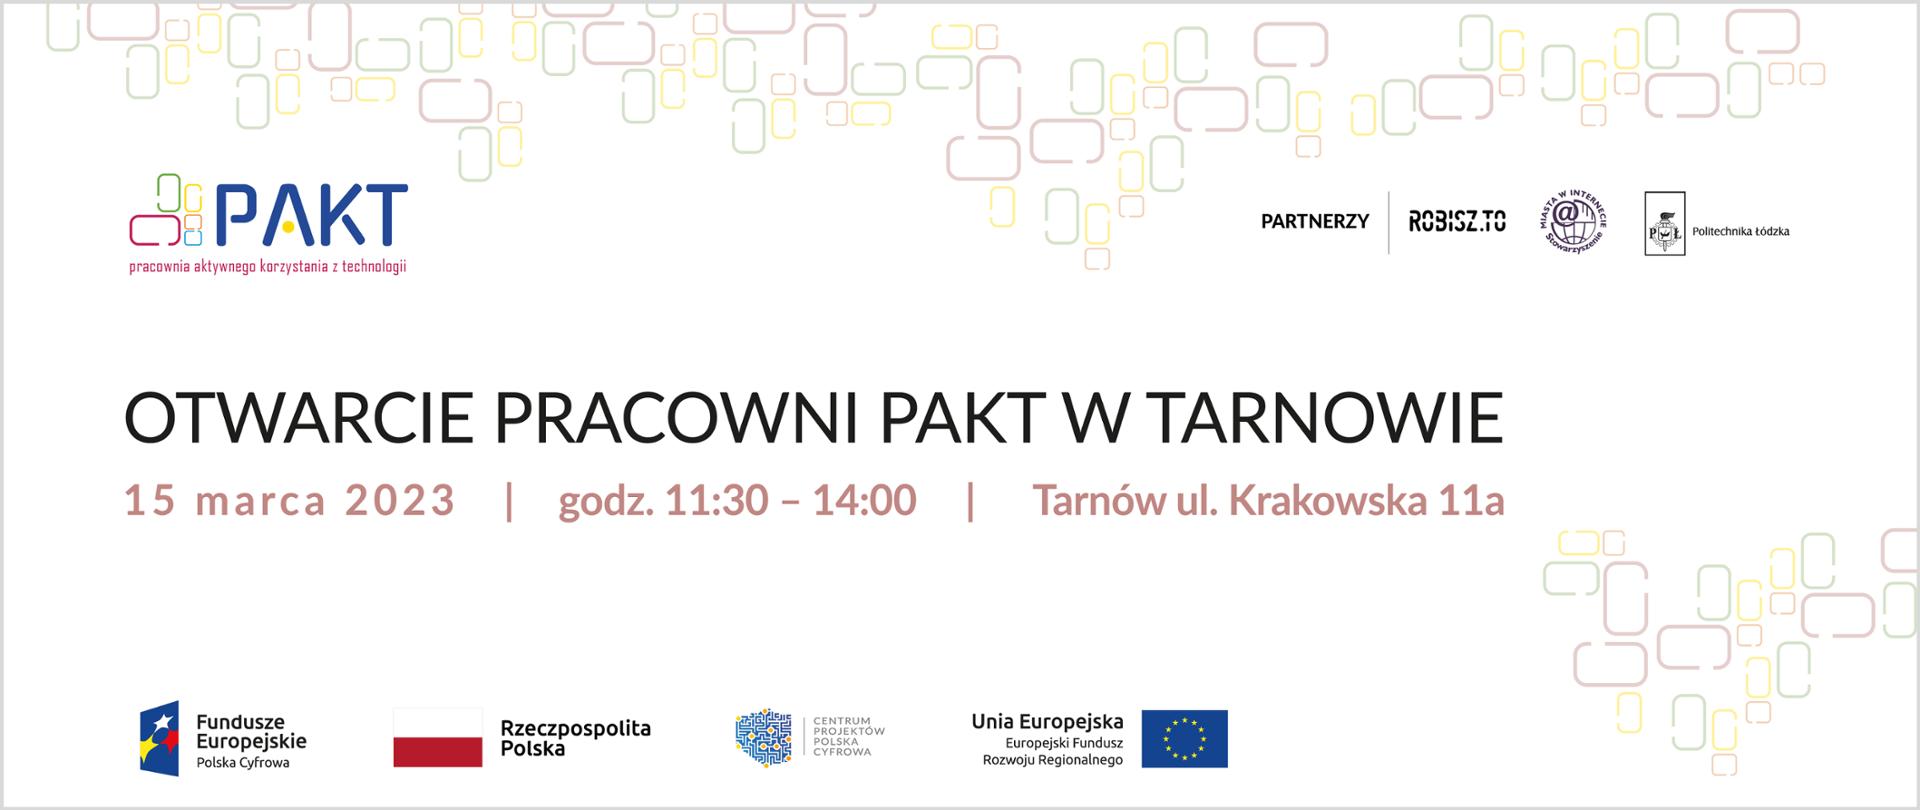 Otwarcie Pracowni PAKT w Tarnowie. 15 marca 2023